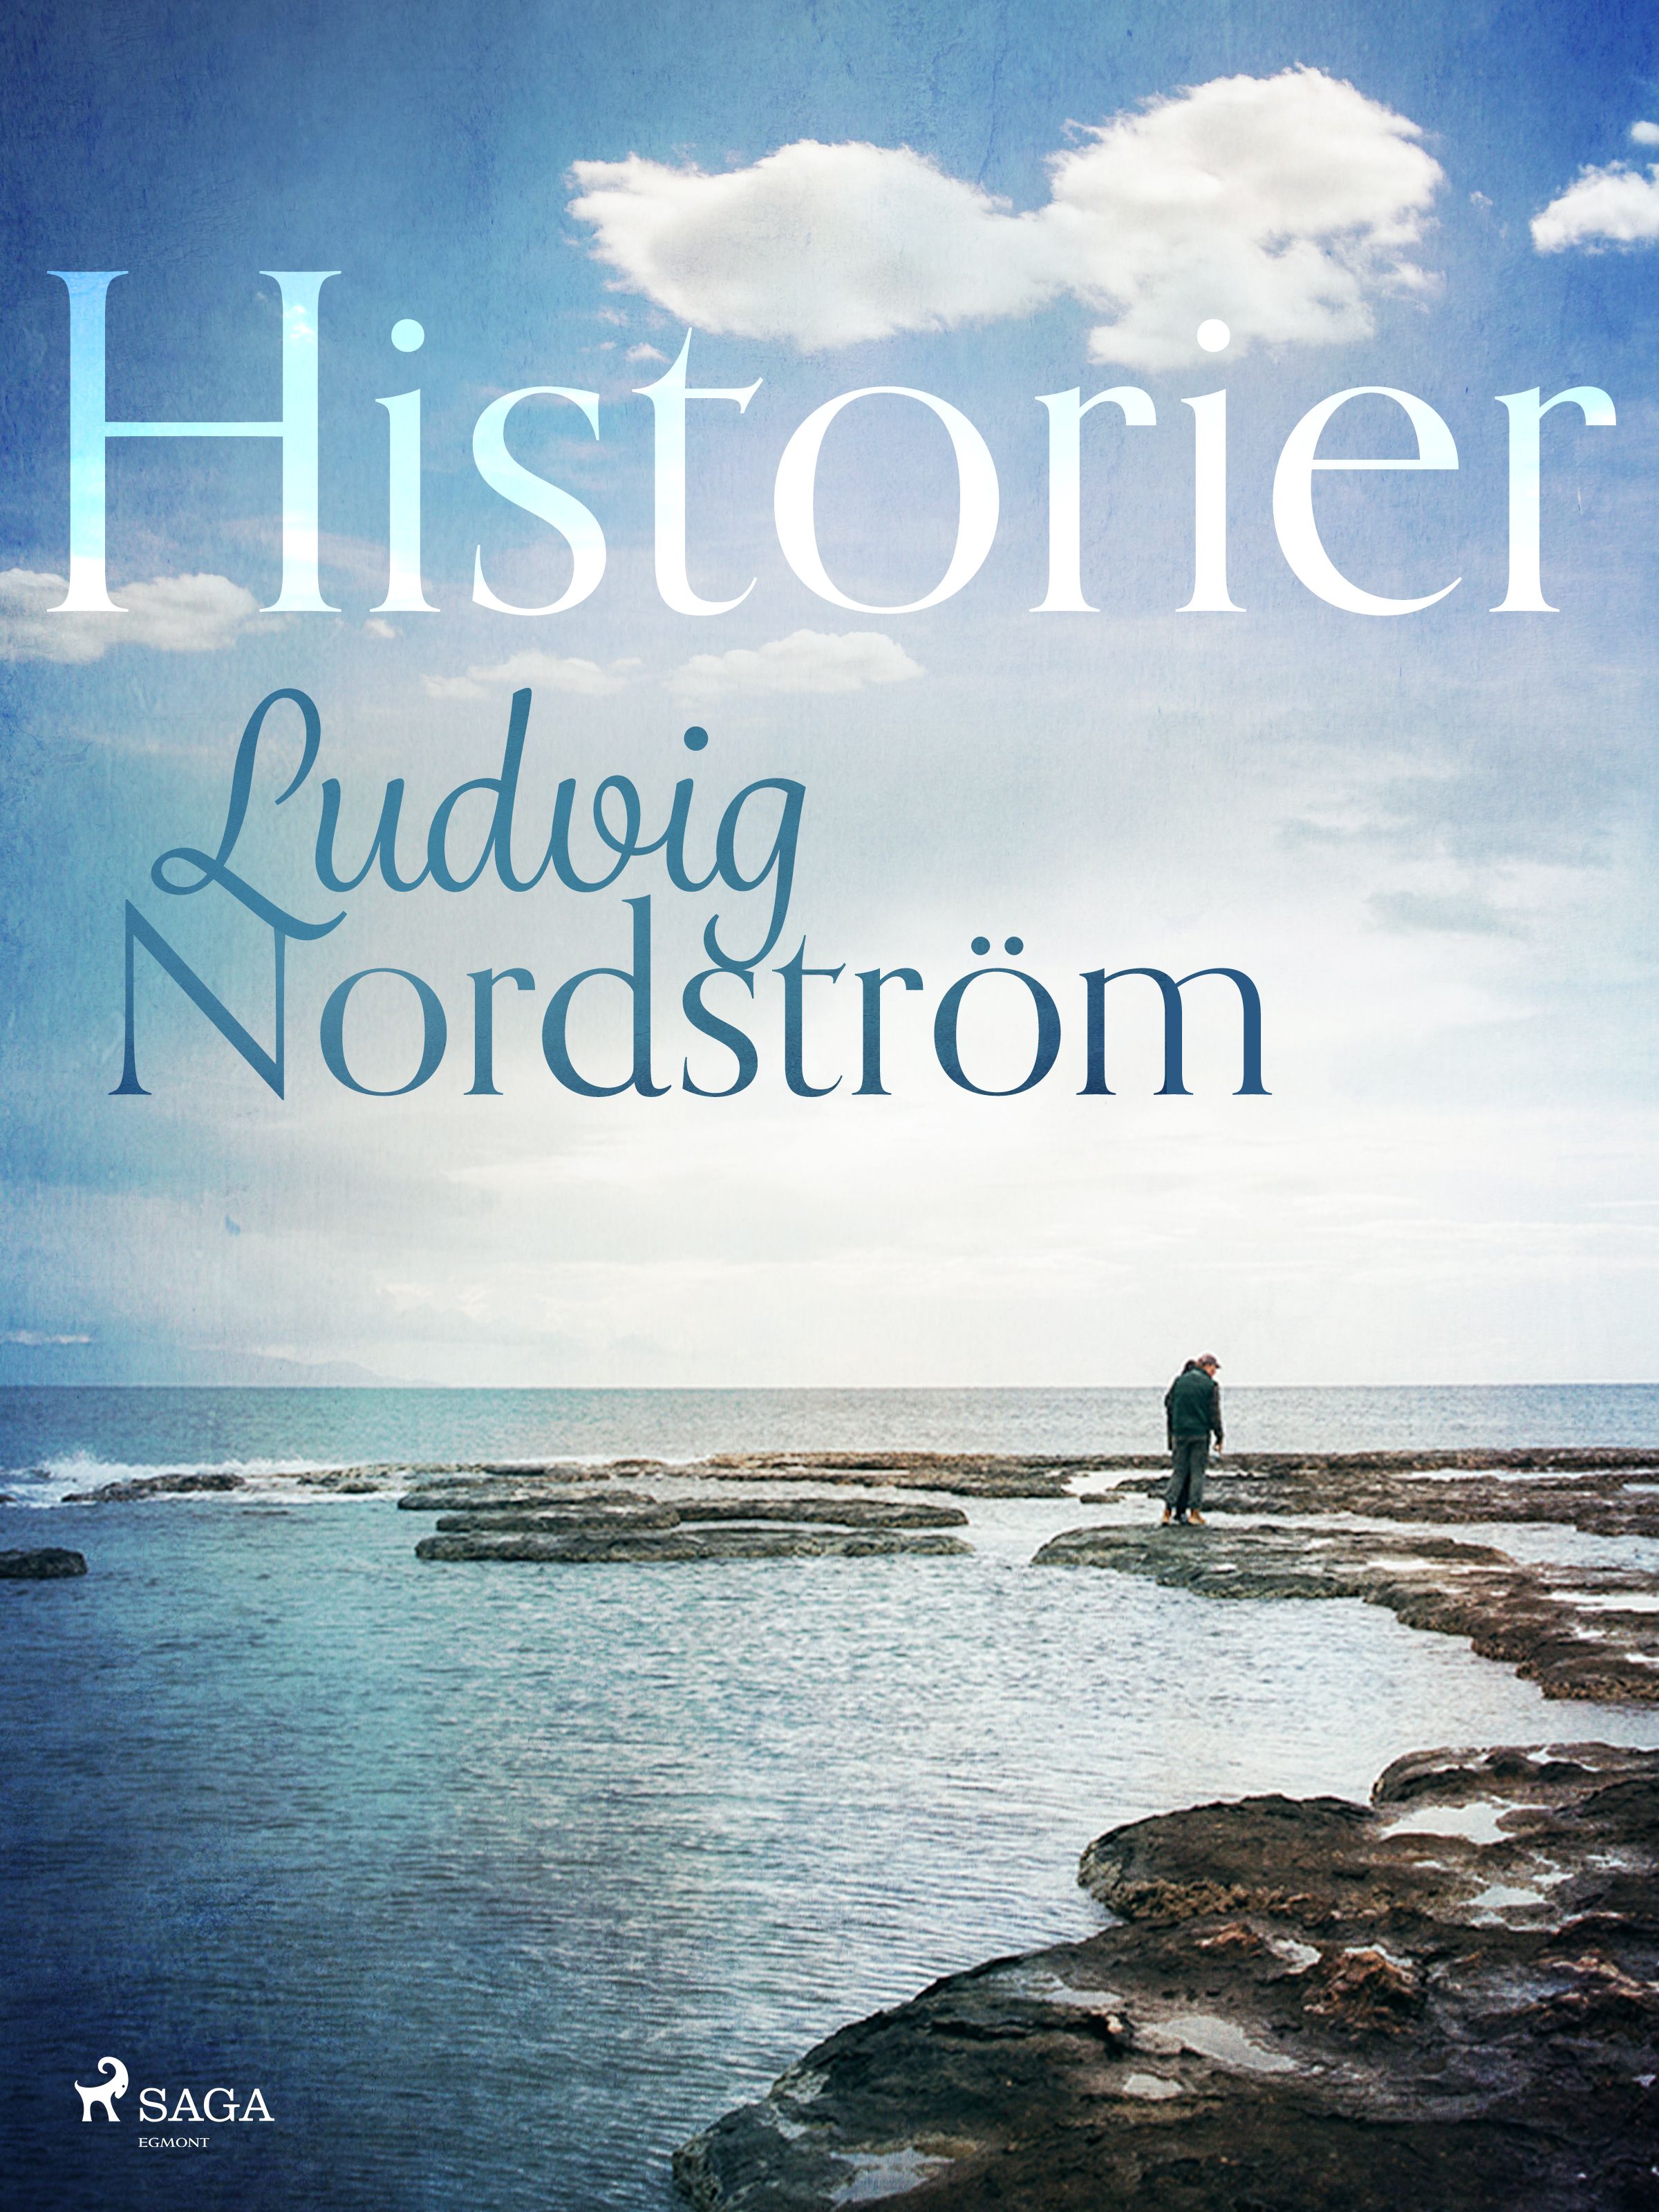 Historier, e-bok av Ludvig Nordström